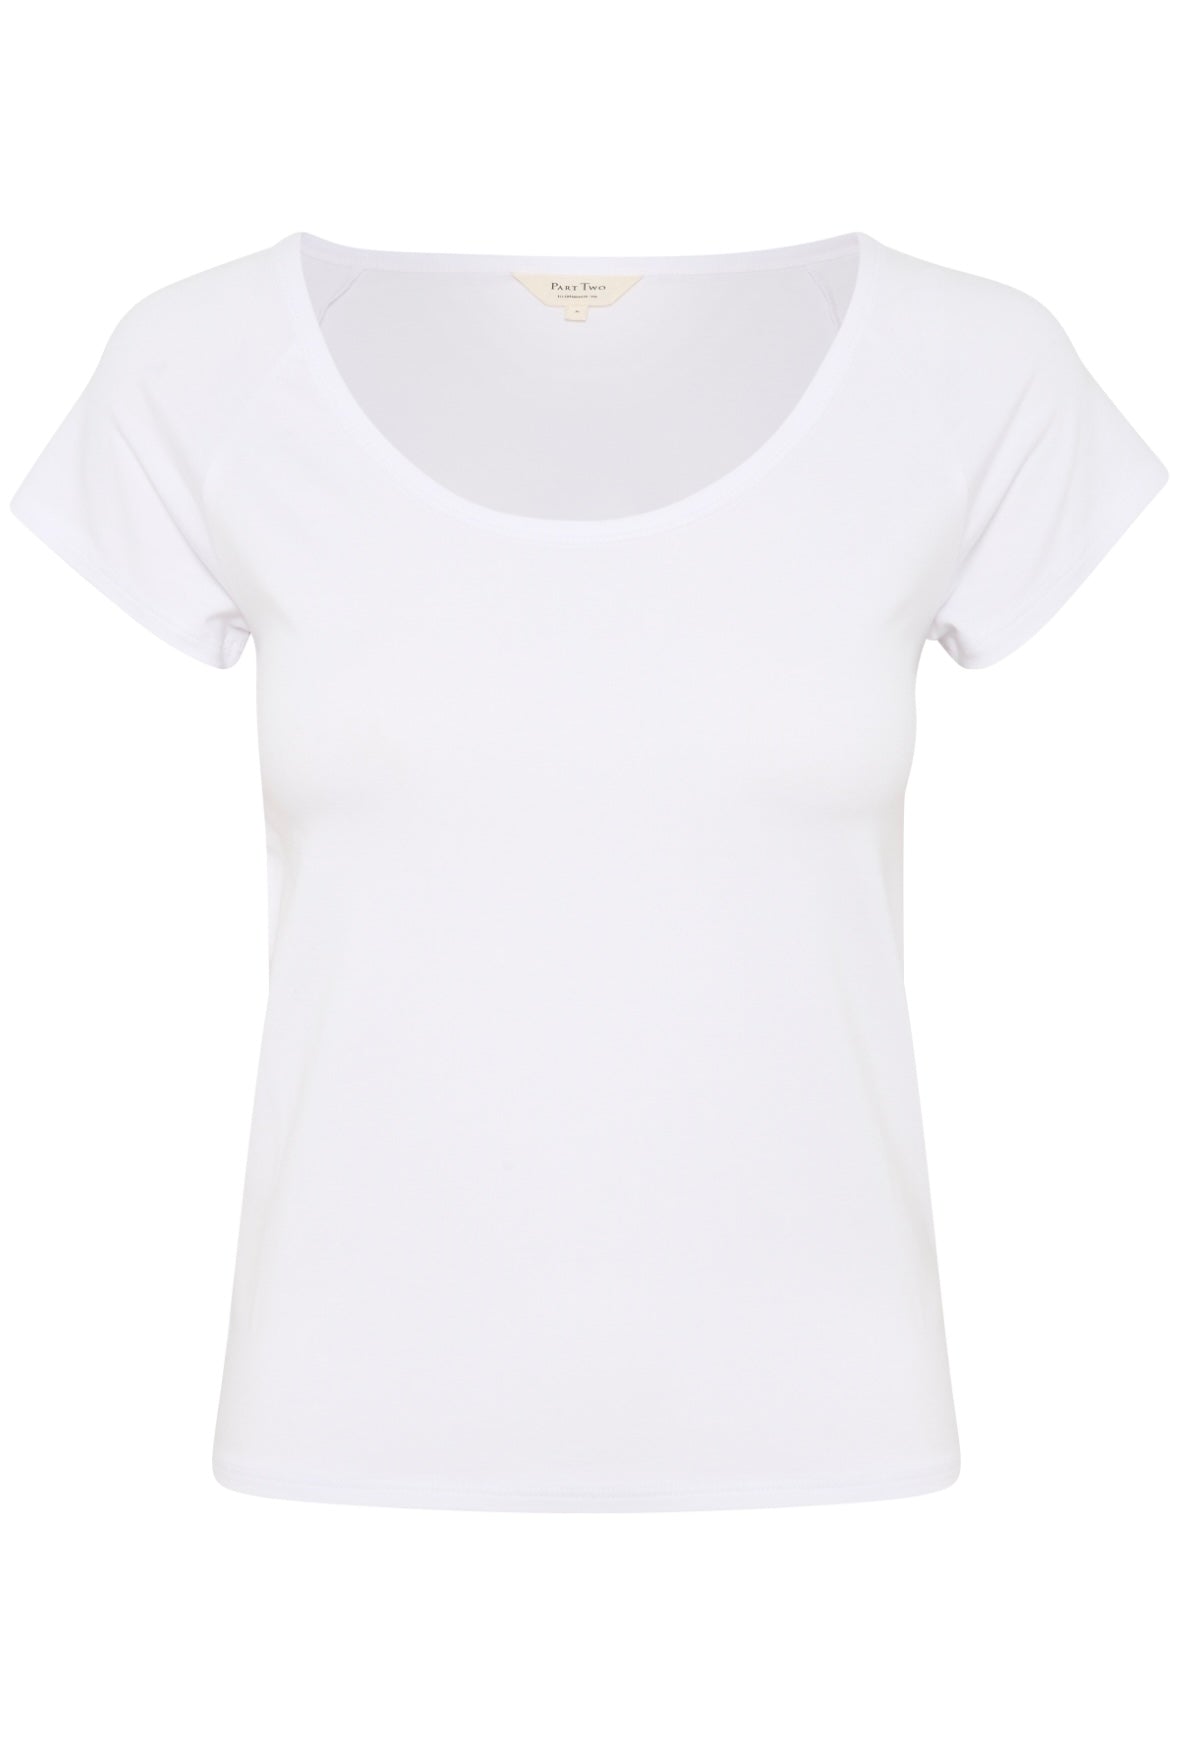 Part Two Gwenyth t-shirt - Bright White